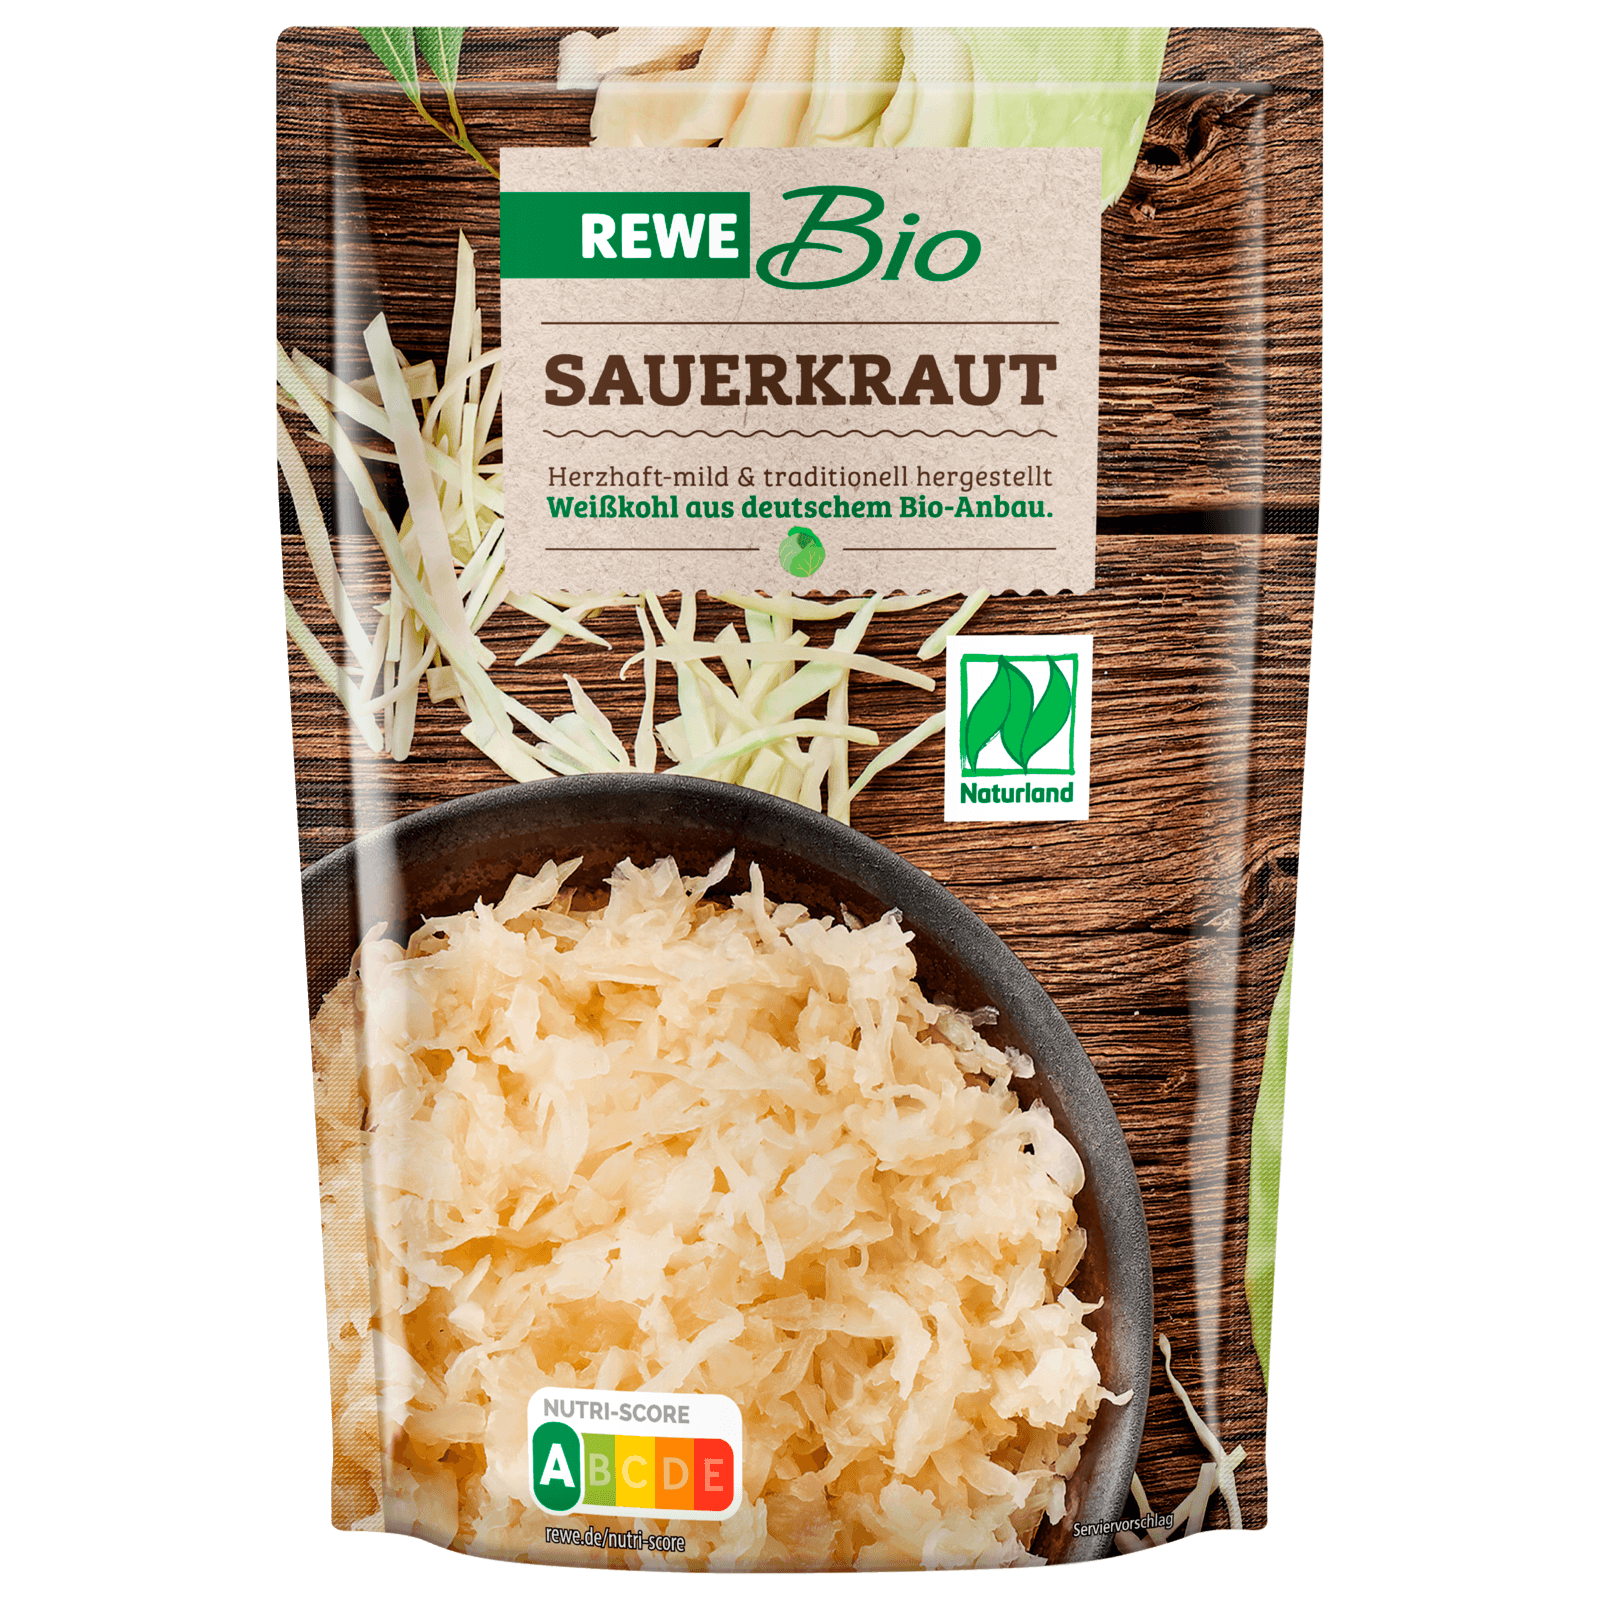 REWE Bio Sauerkraut 385g